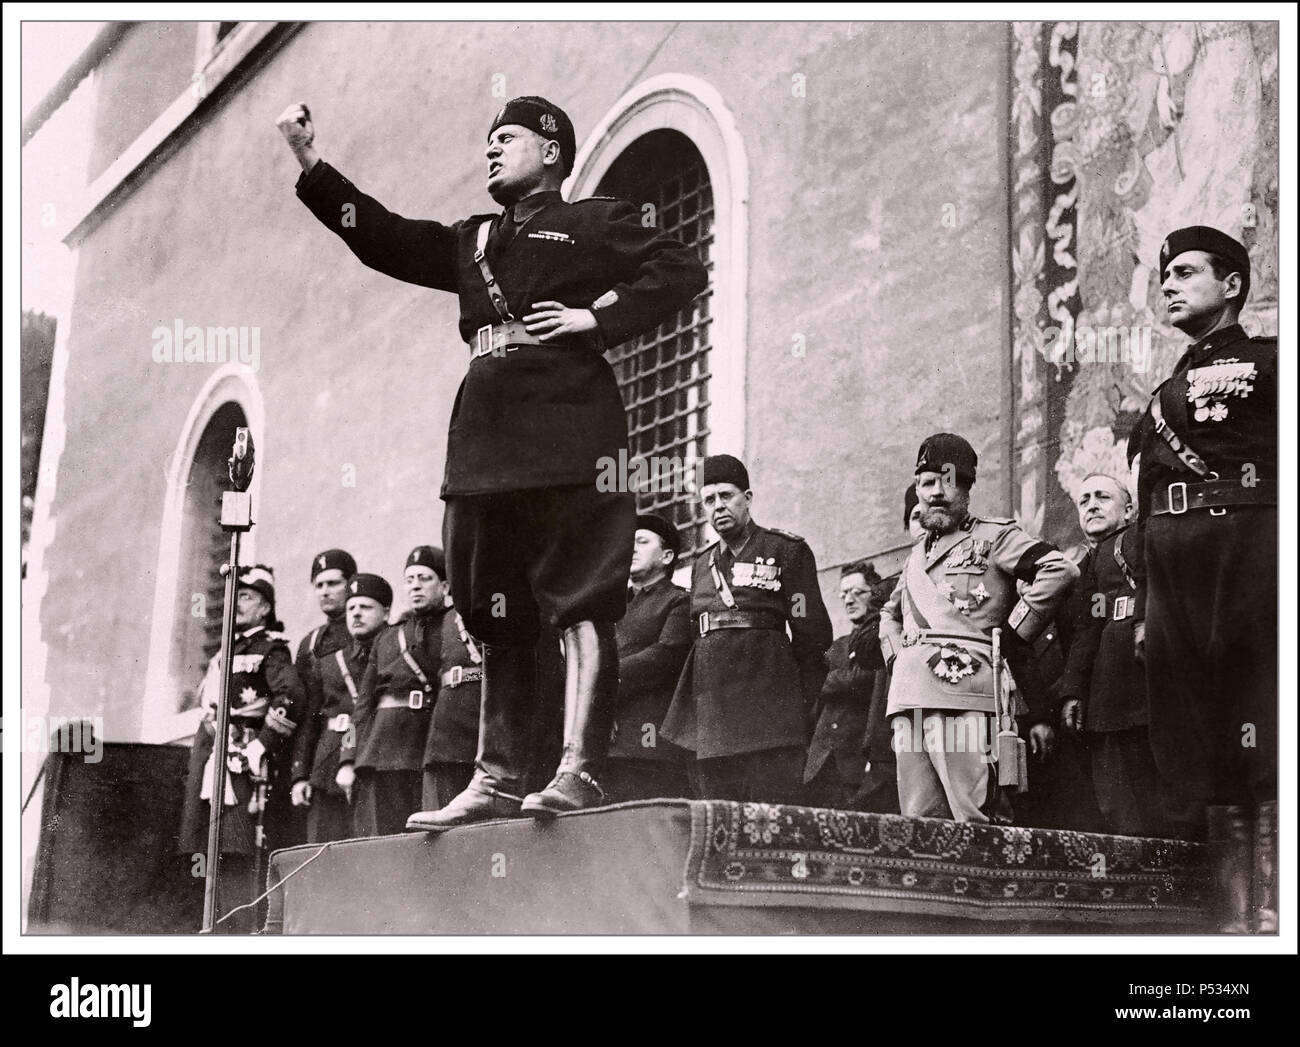 IL DUCE MUSSOLINI Italiano dittatore fascista Benito Mussolini facendo un intervento appassionato a Roma Italia Foto Stock